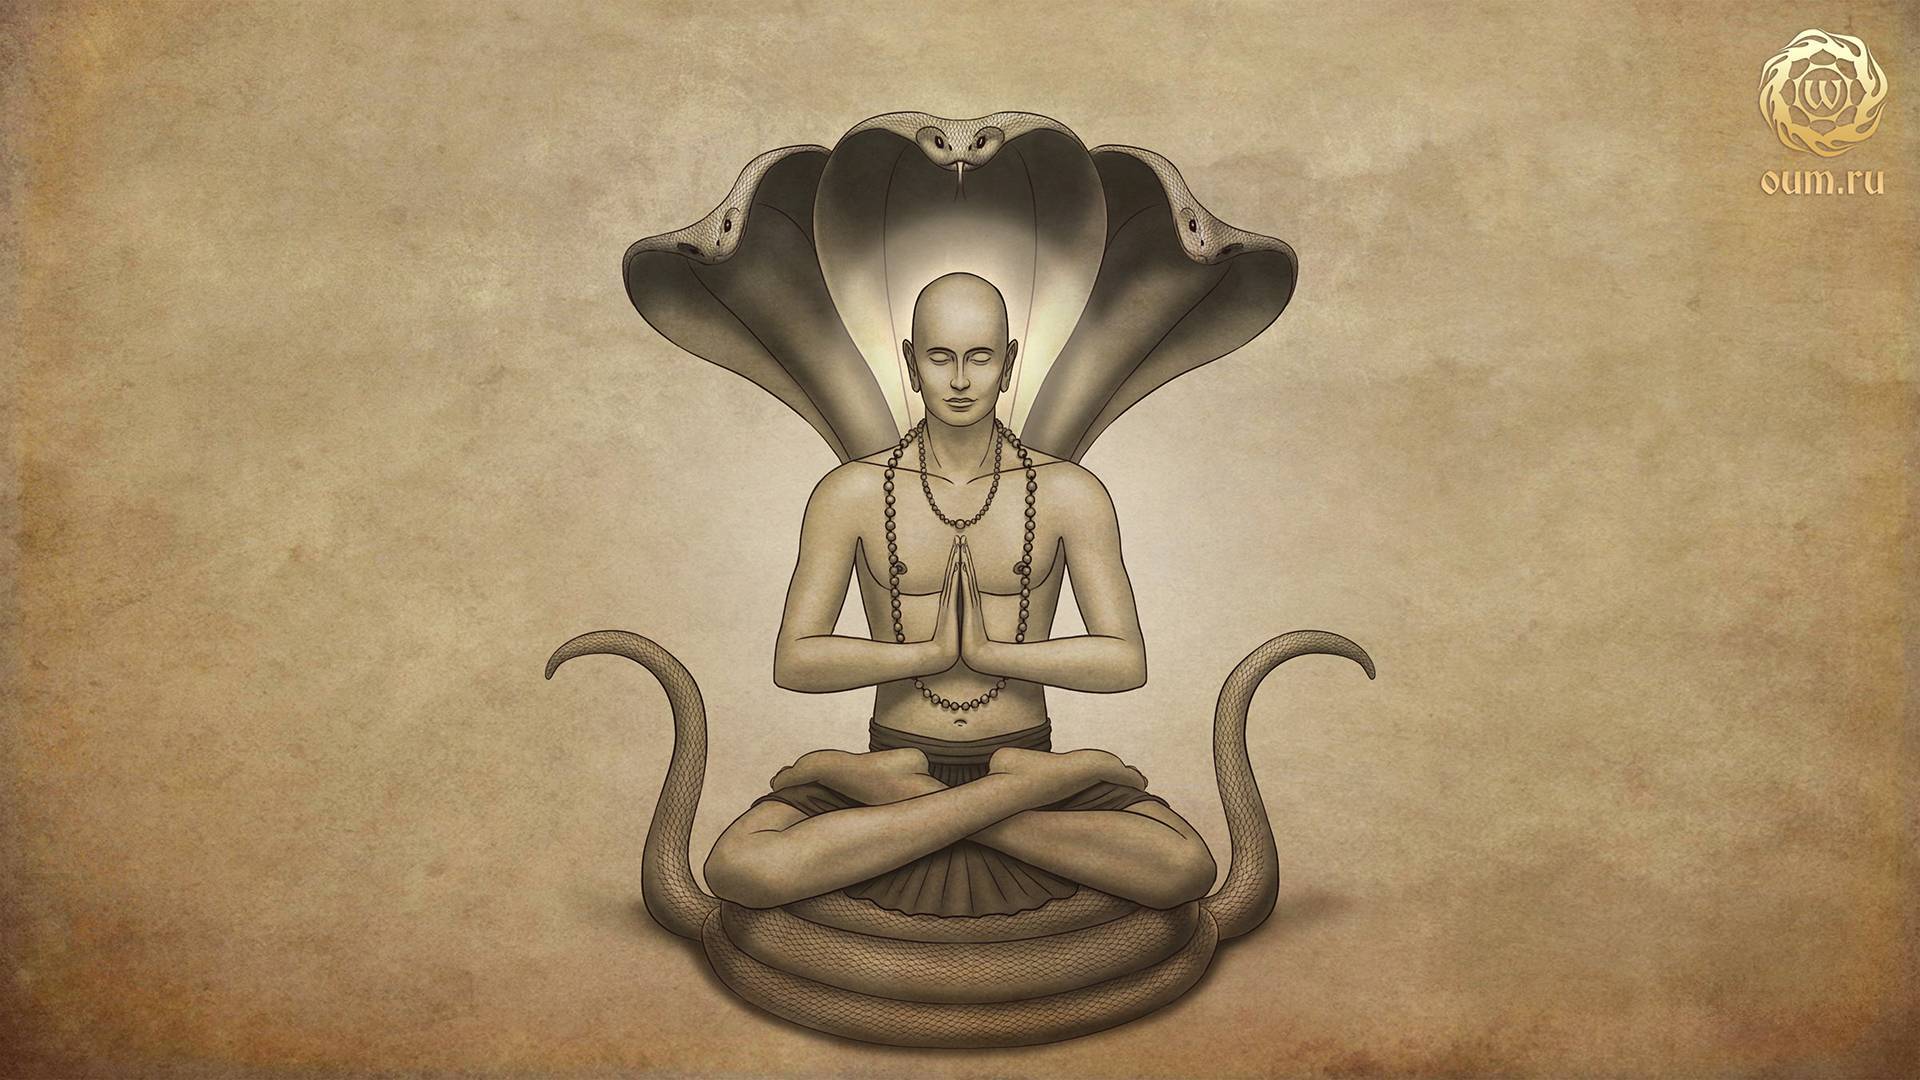 Сиддха йога (развитие мистических или магических сил)